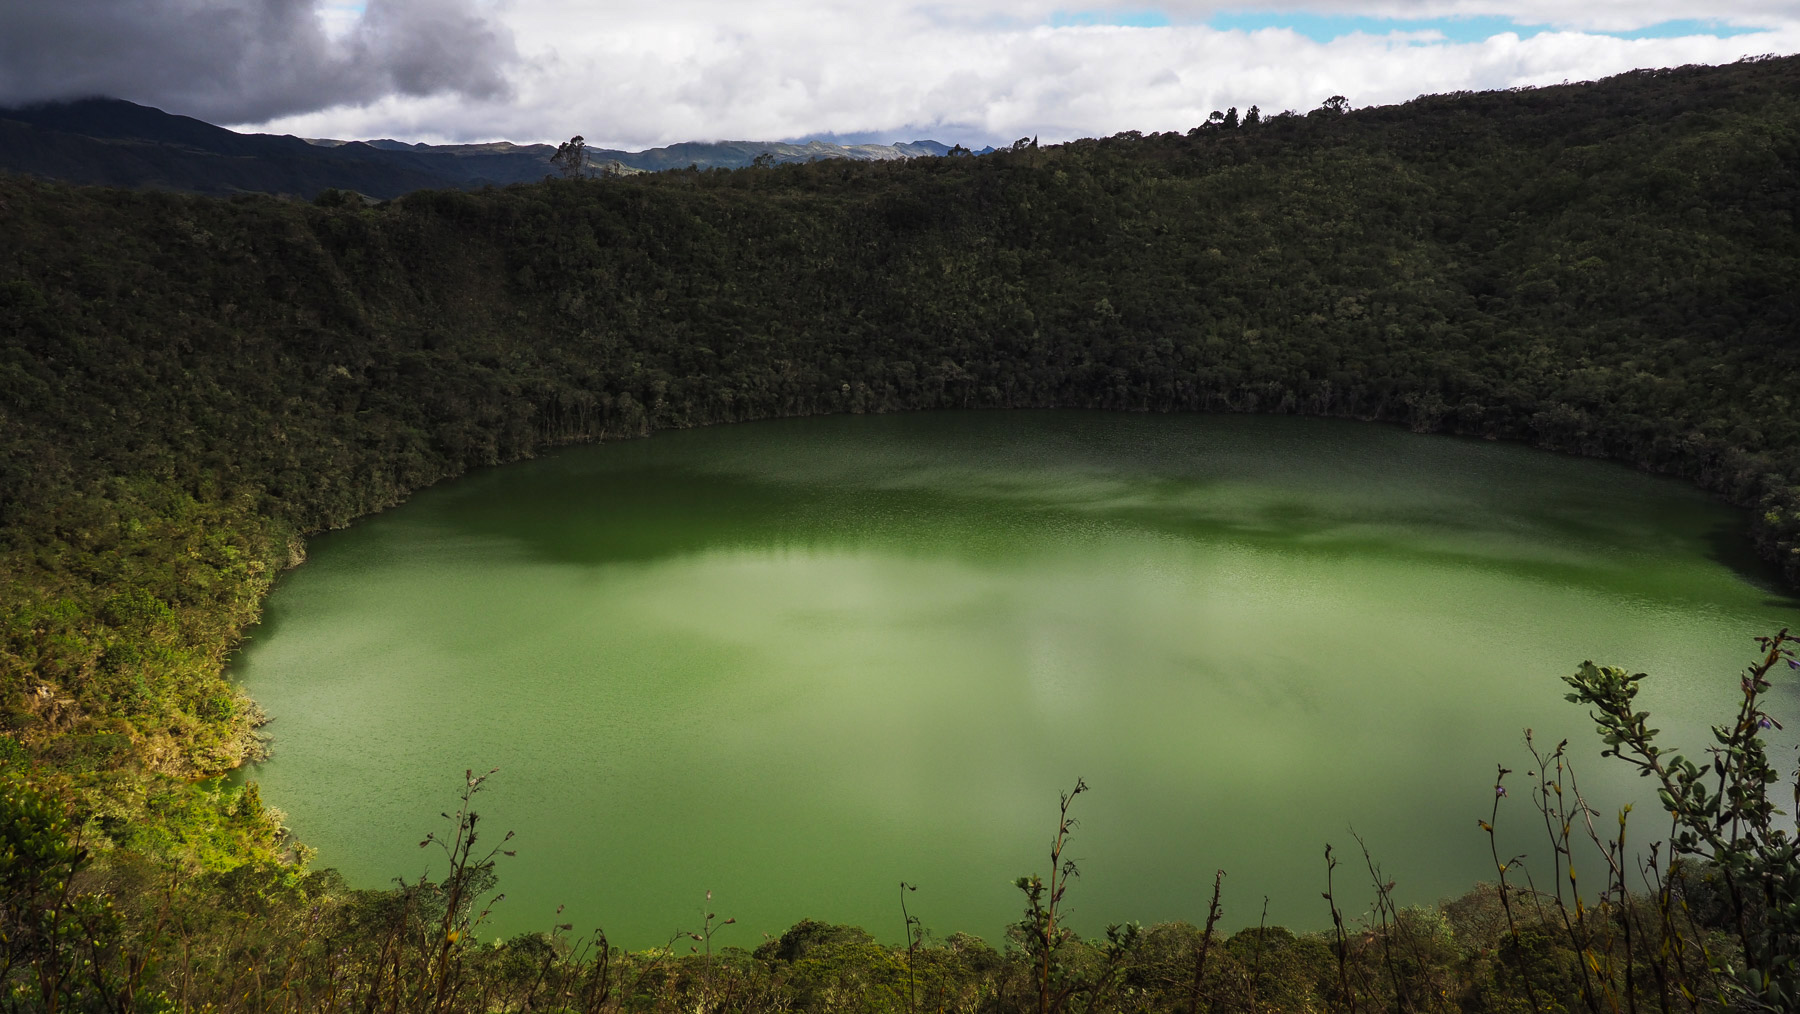 Wanderung zum mystischen heiligen See der Muiscas – Laguna de Guatavita